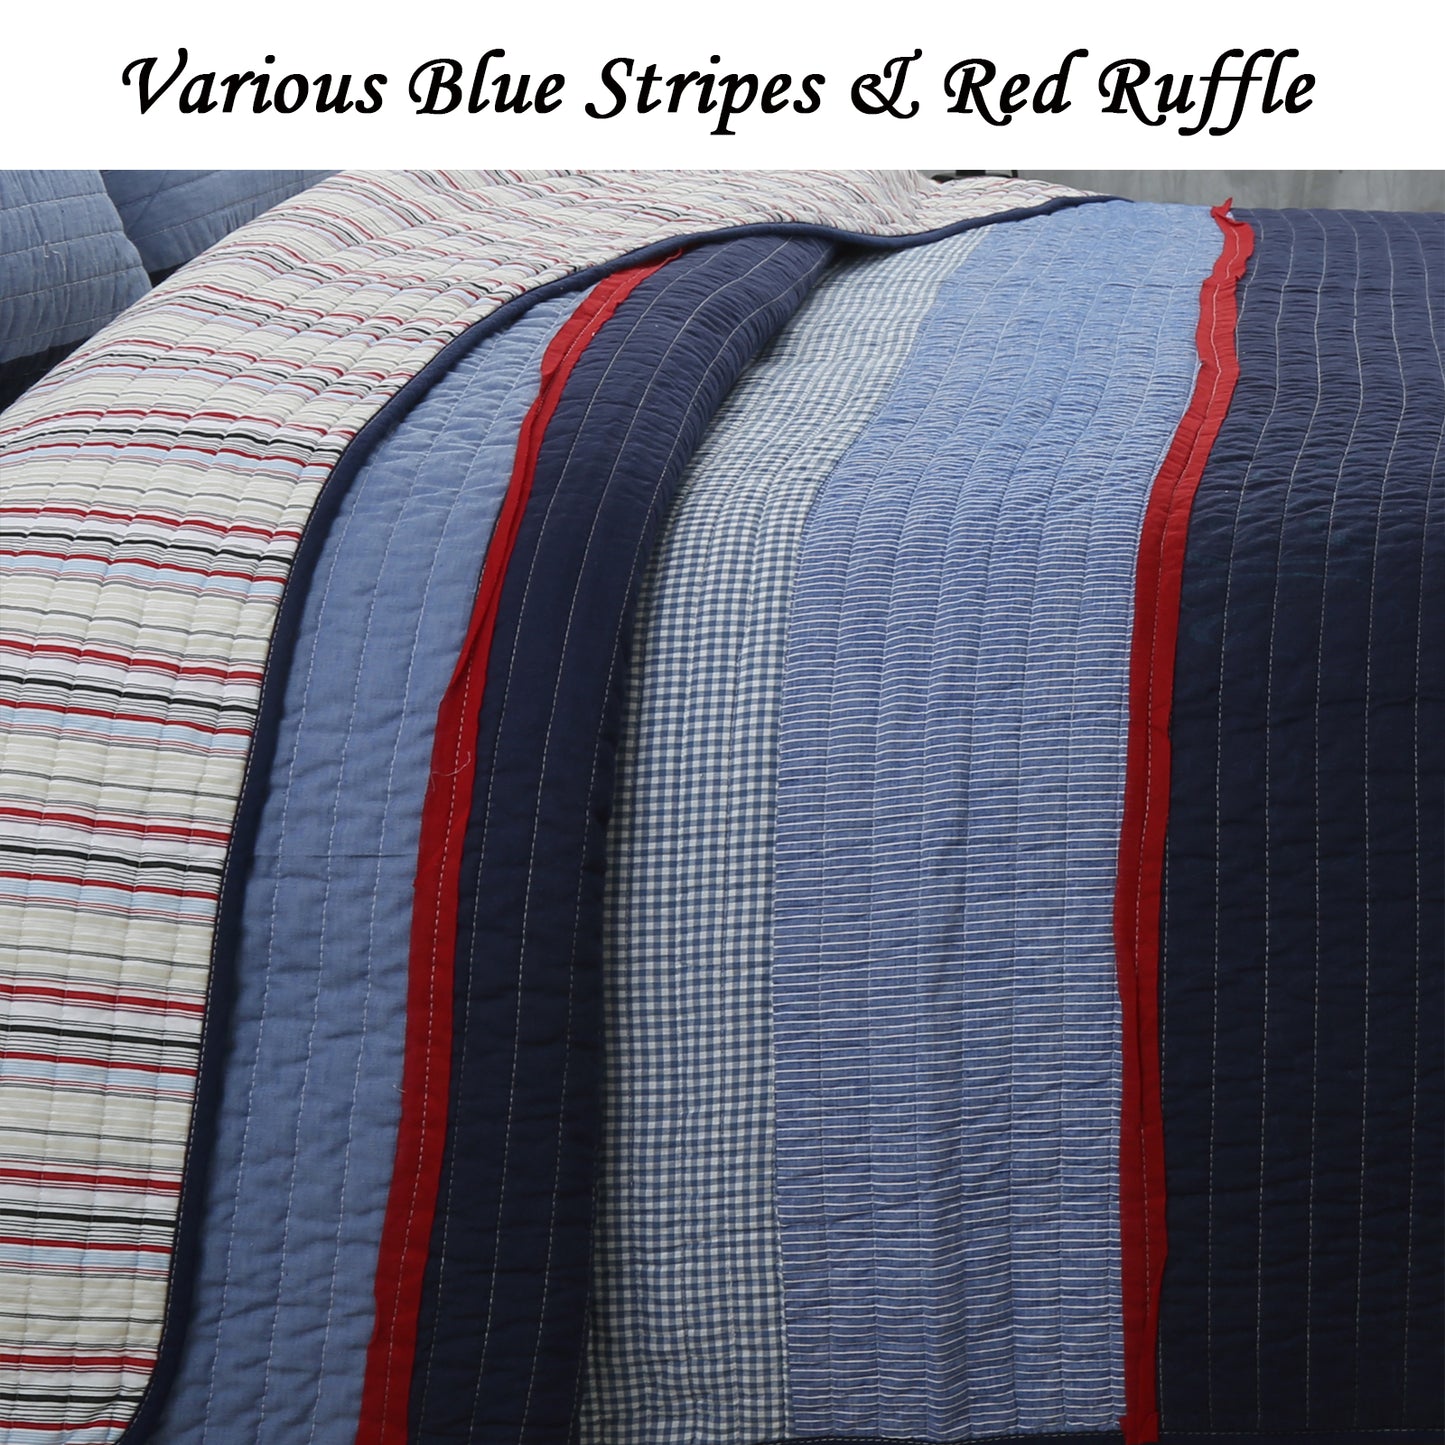 Levi Jean Stripped Denim Blues Cotton Reversible Quilt Bedding Set